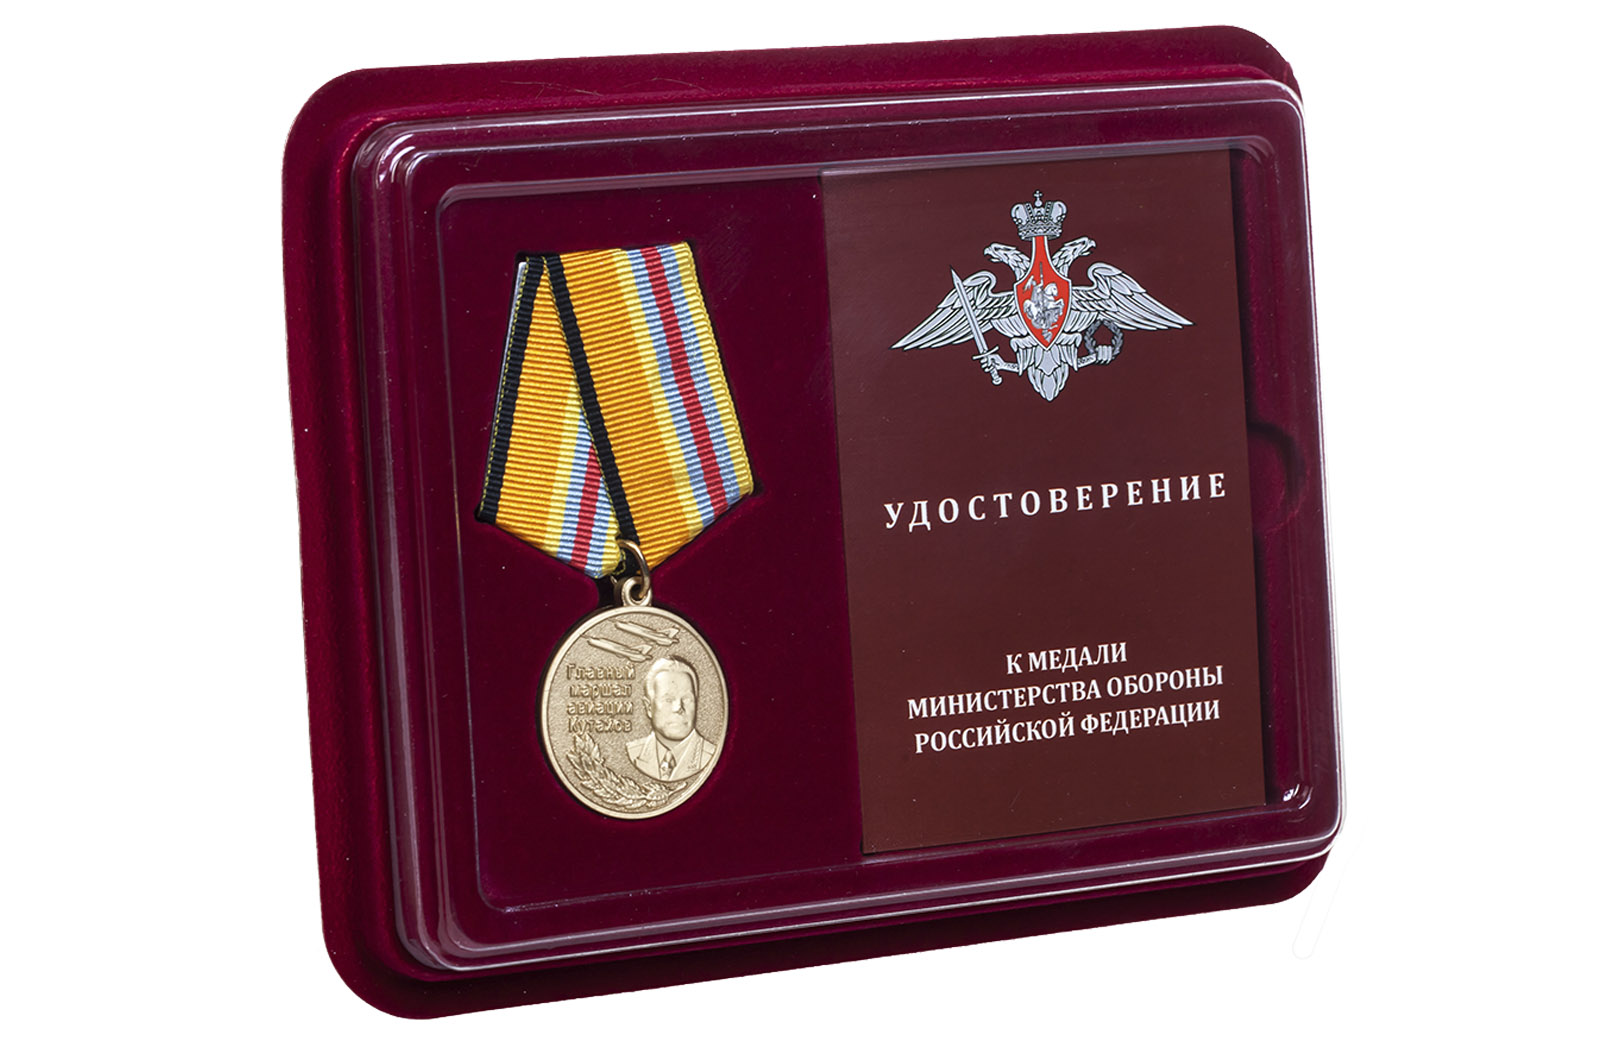 Купить медаль "Маршал Кутахов" в футляре с удостоверением в подарок